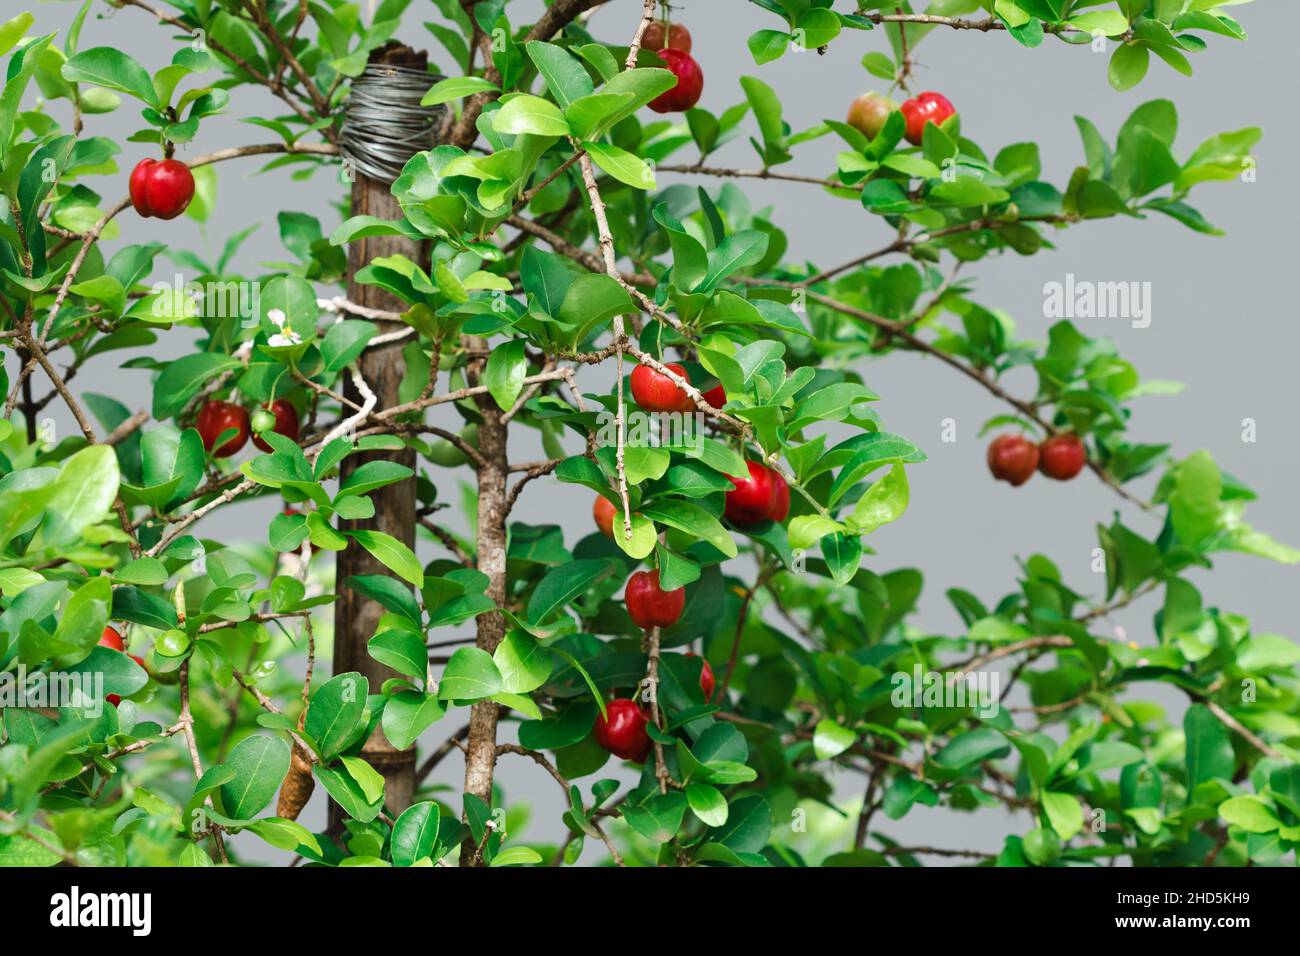 Frische Bio-Acerola-Kirsche. Thai oder Acerola Kirschen Früchte auf dem  Baum mit Sonnenuntergang. Acerola ist eine berühmte Frucht in Südamerika,  vor allem in Brasilien Stockfotografie - Alamy